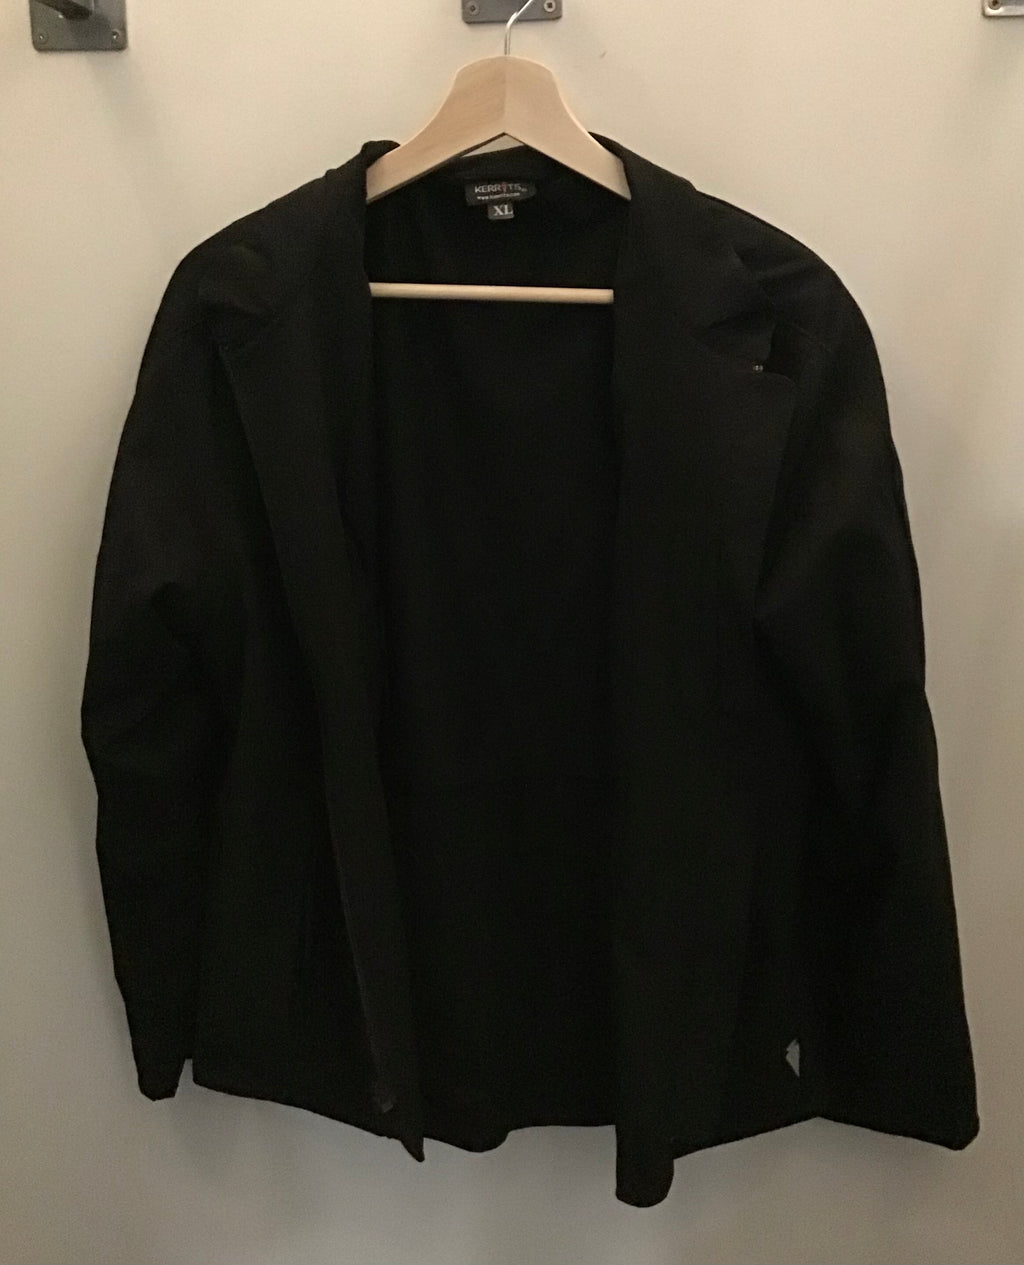 Kerrits jacket (Xl)